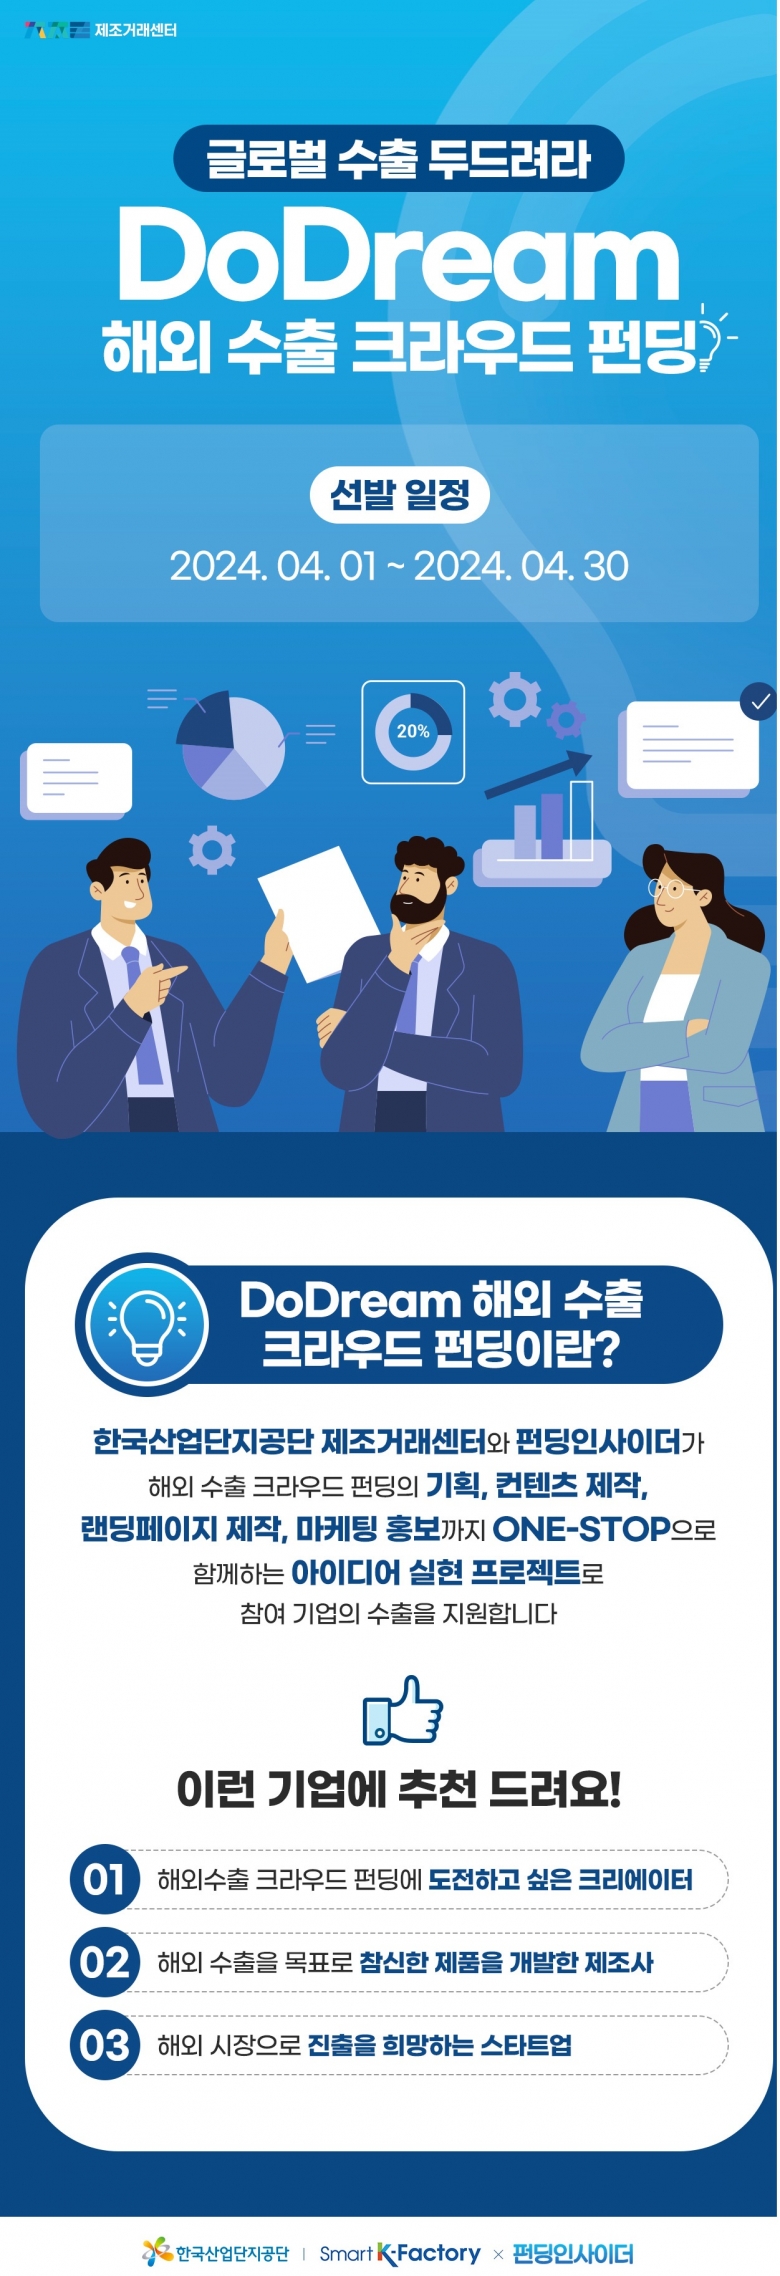 ‘두드림(DoDream) 해외 수출 크라우드 펀딩 지원사업’ 모집